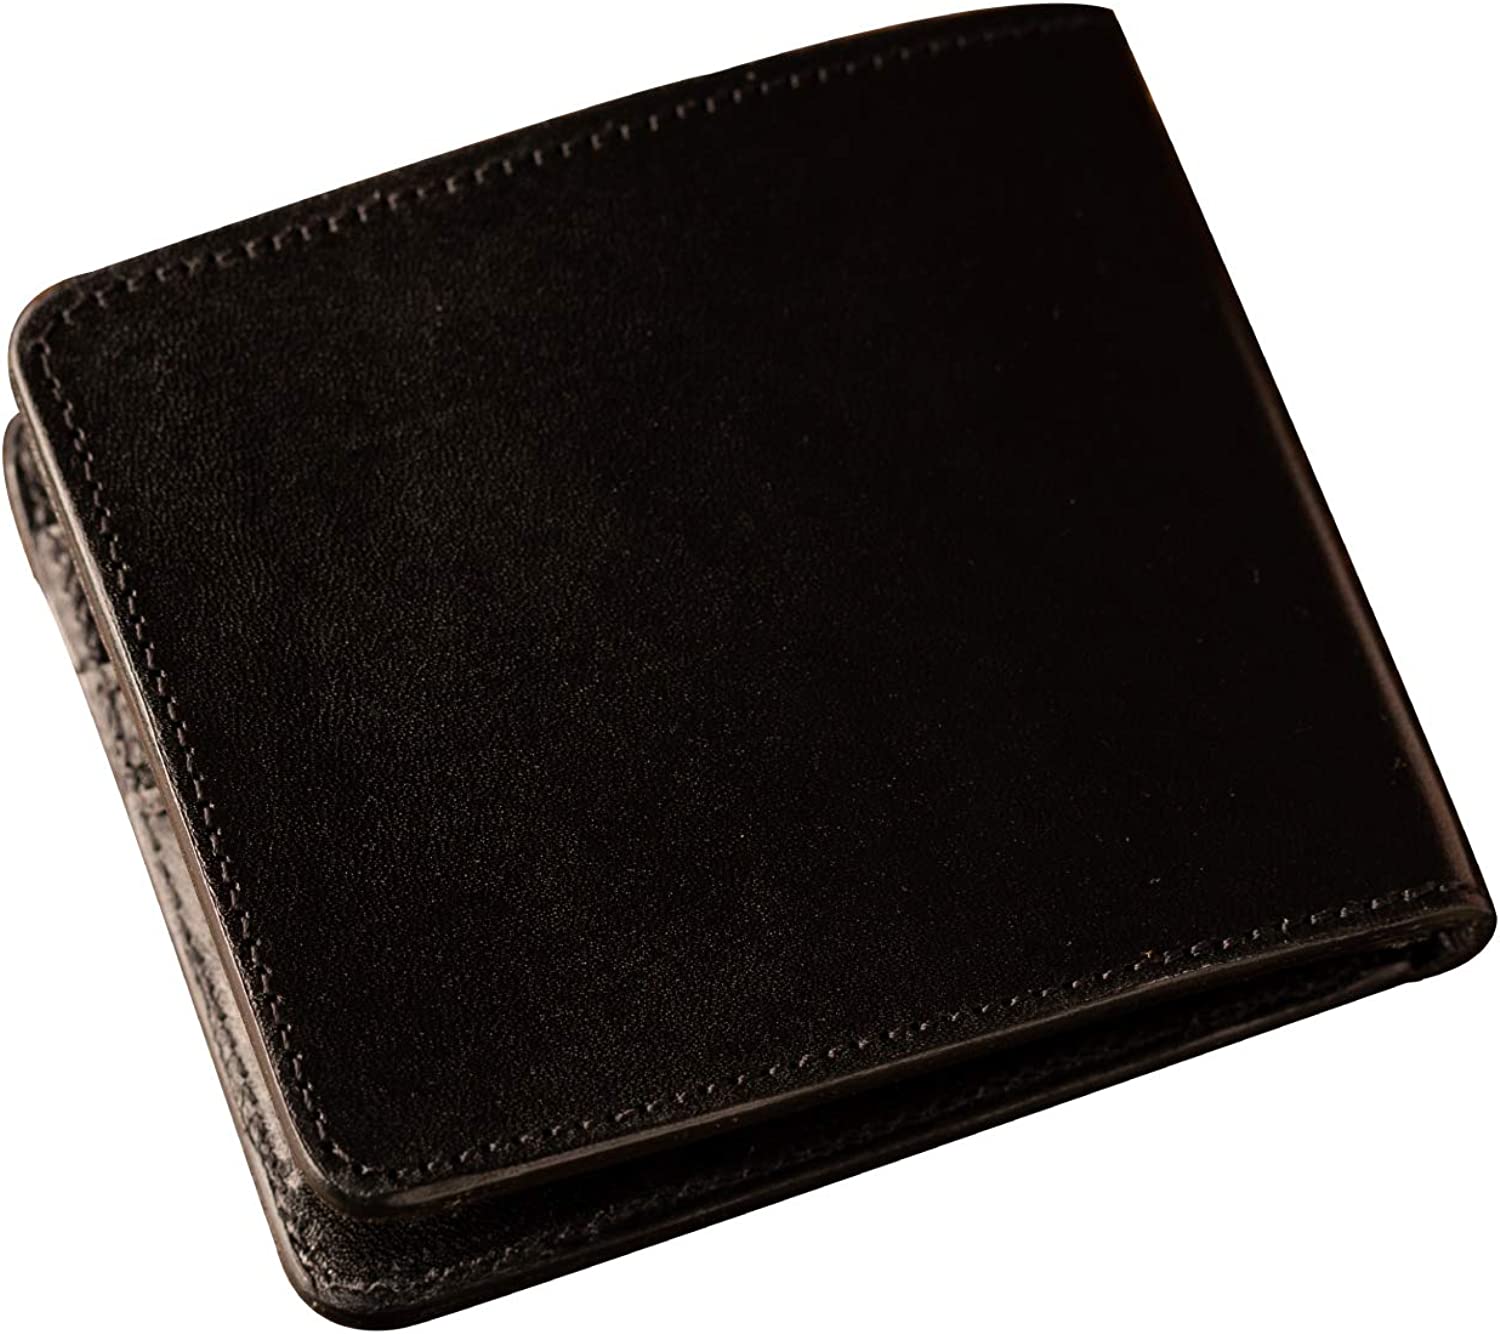 珍しい 本革 栃木レザー 二つ折り財布 日本製 ブラック WL-010 カードケース ウォレット シンプル 札入れ 財布 薄型 長財布 